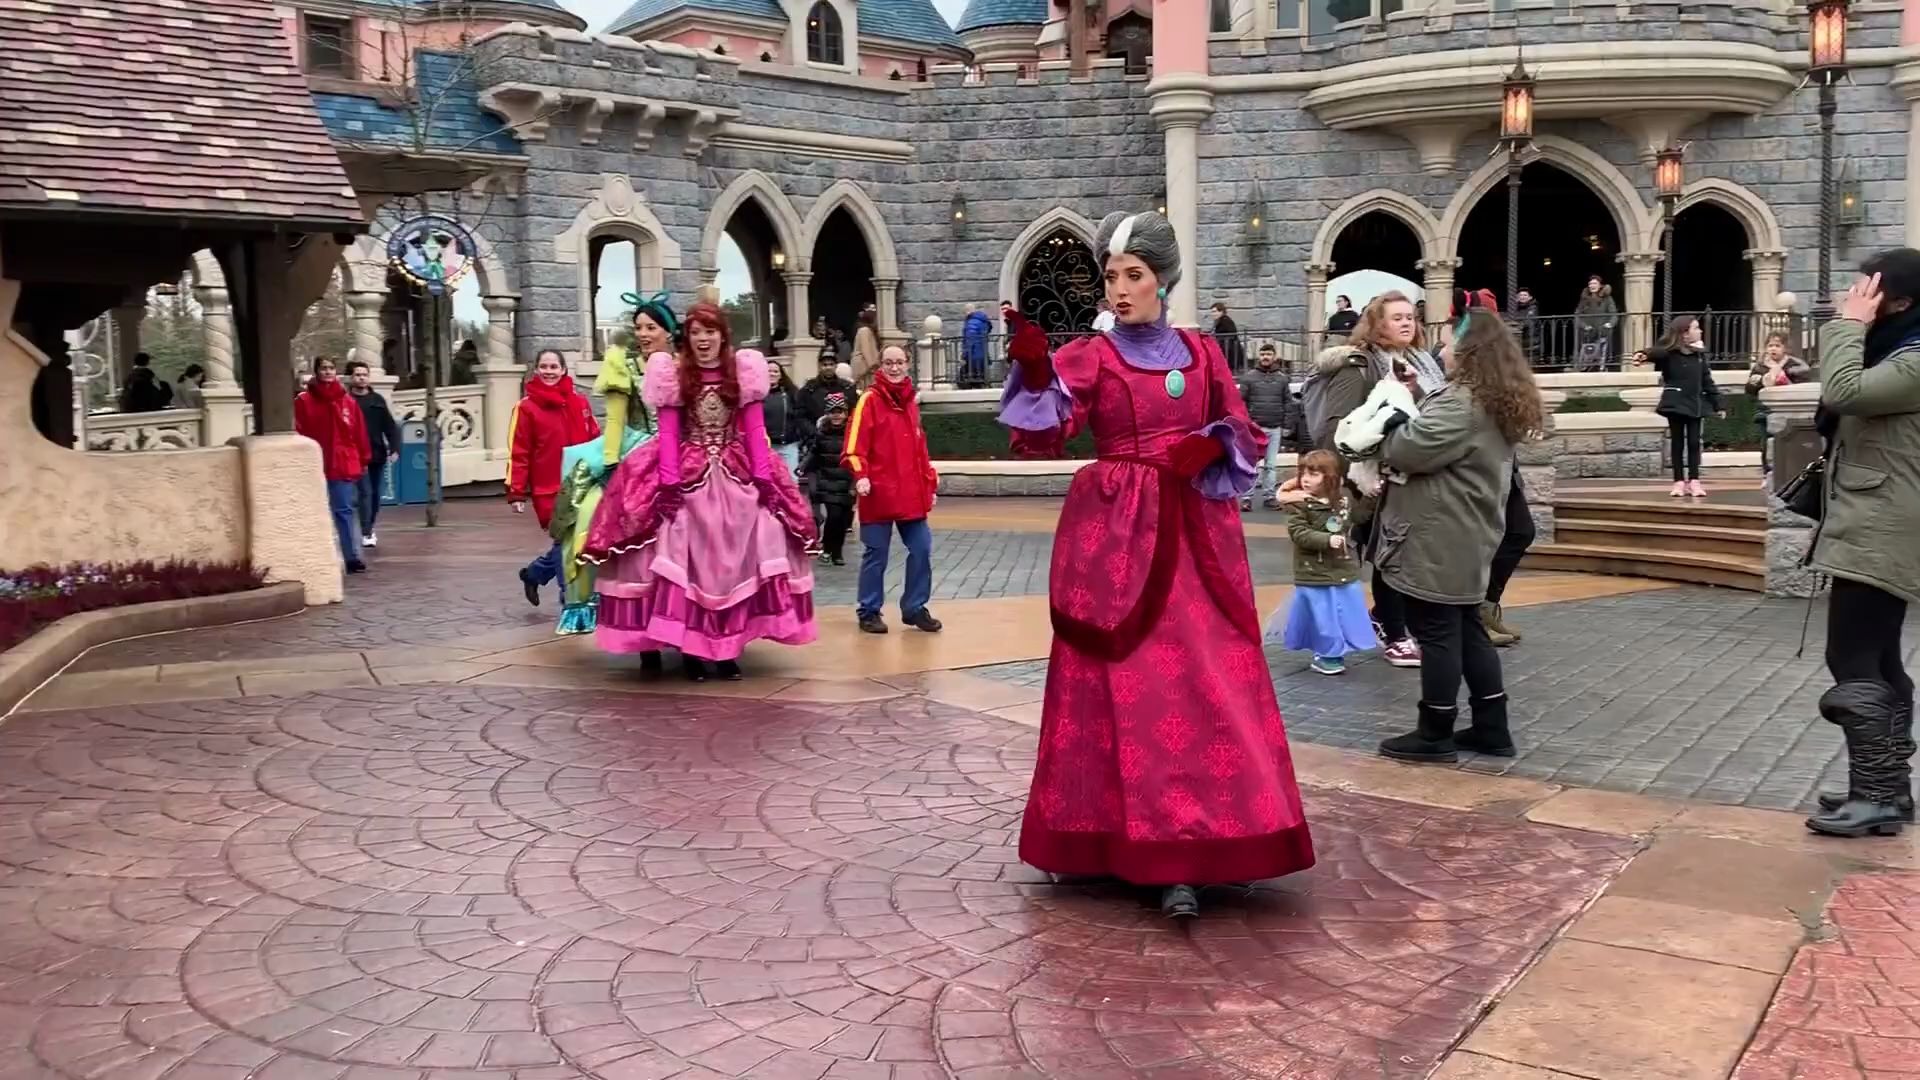 【迪士尼后妈】灰姑娘后妈带着两女儿出来营业遇到打扮成王子的游客